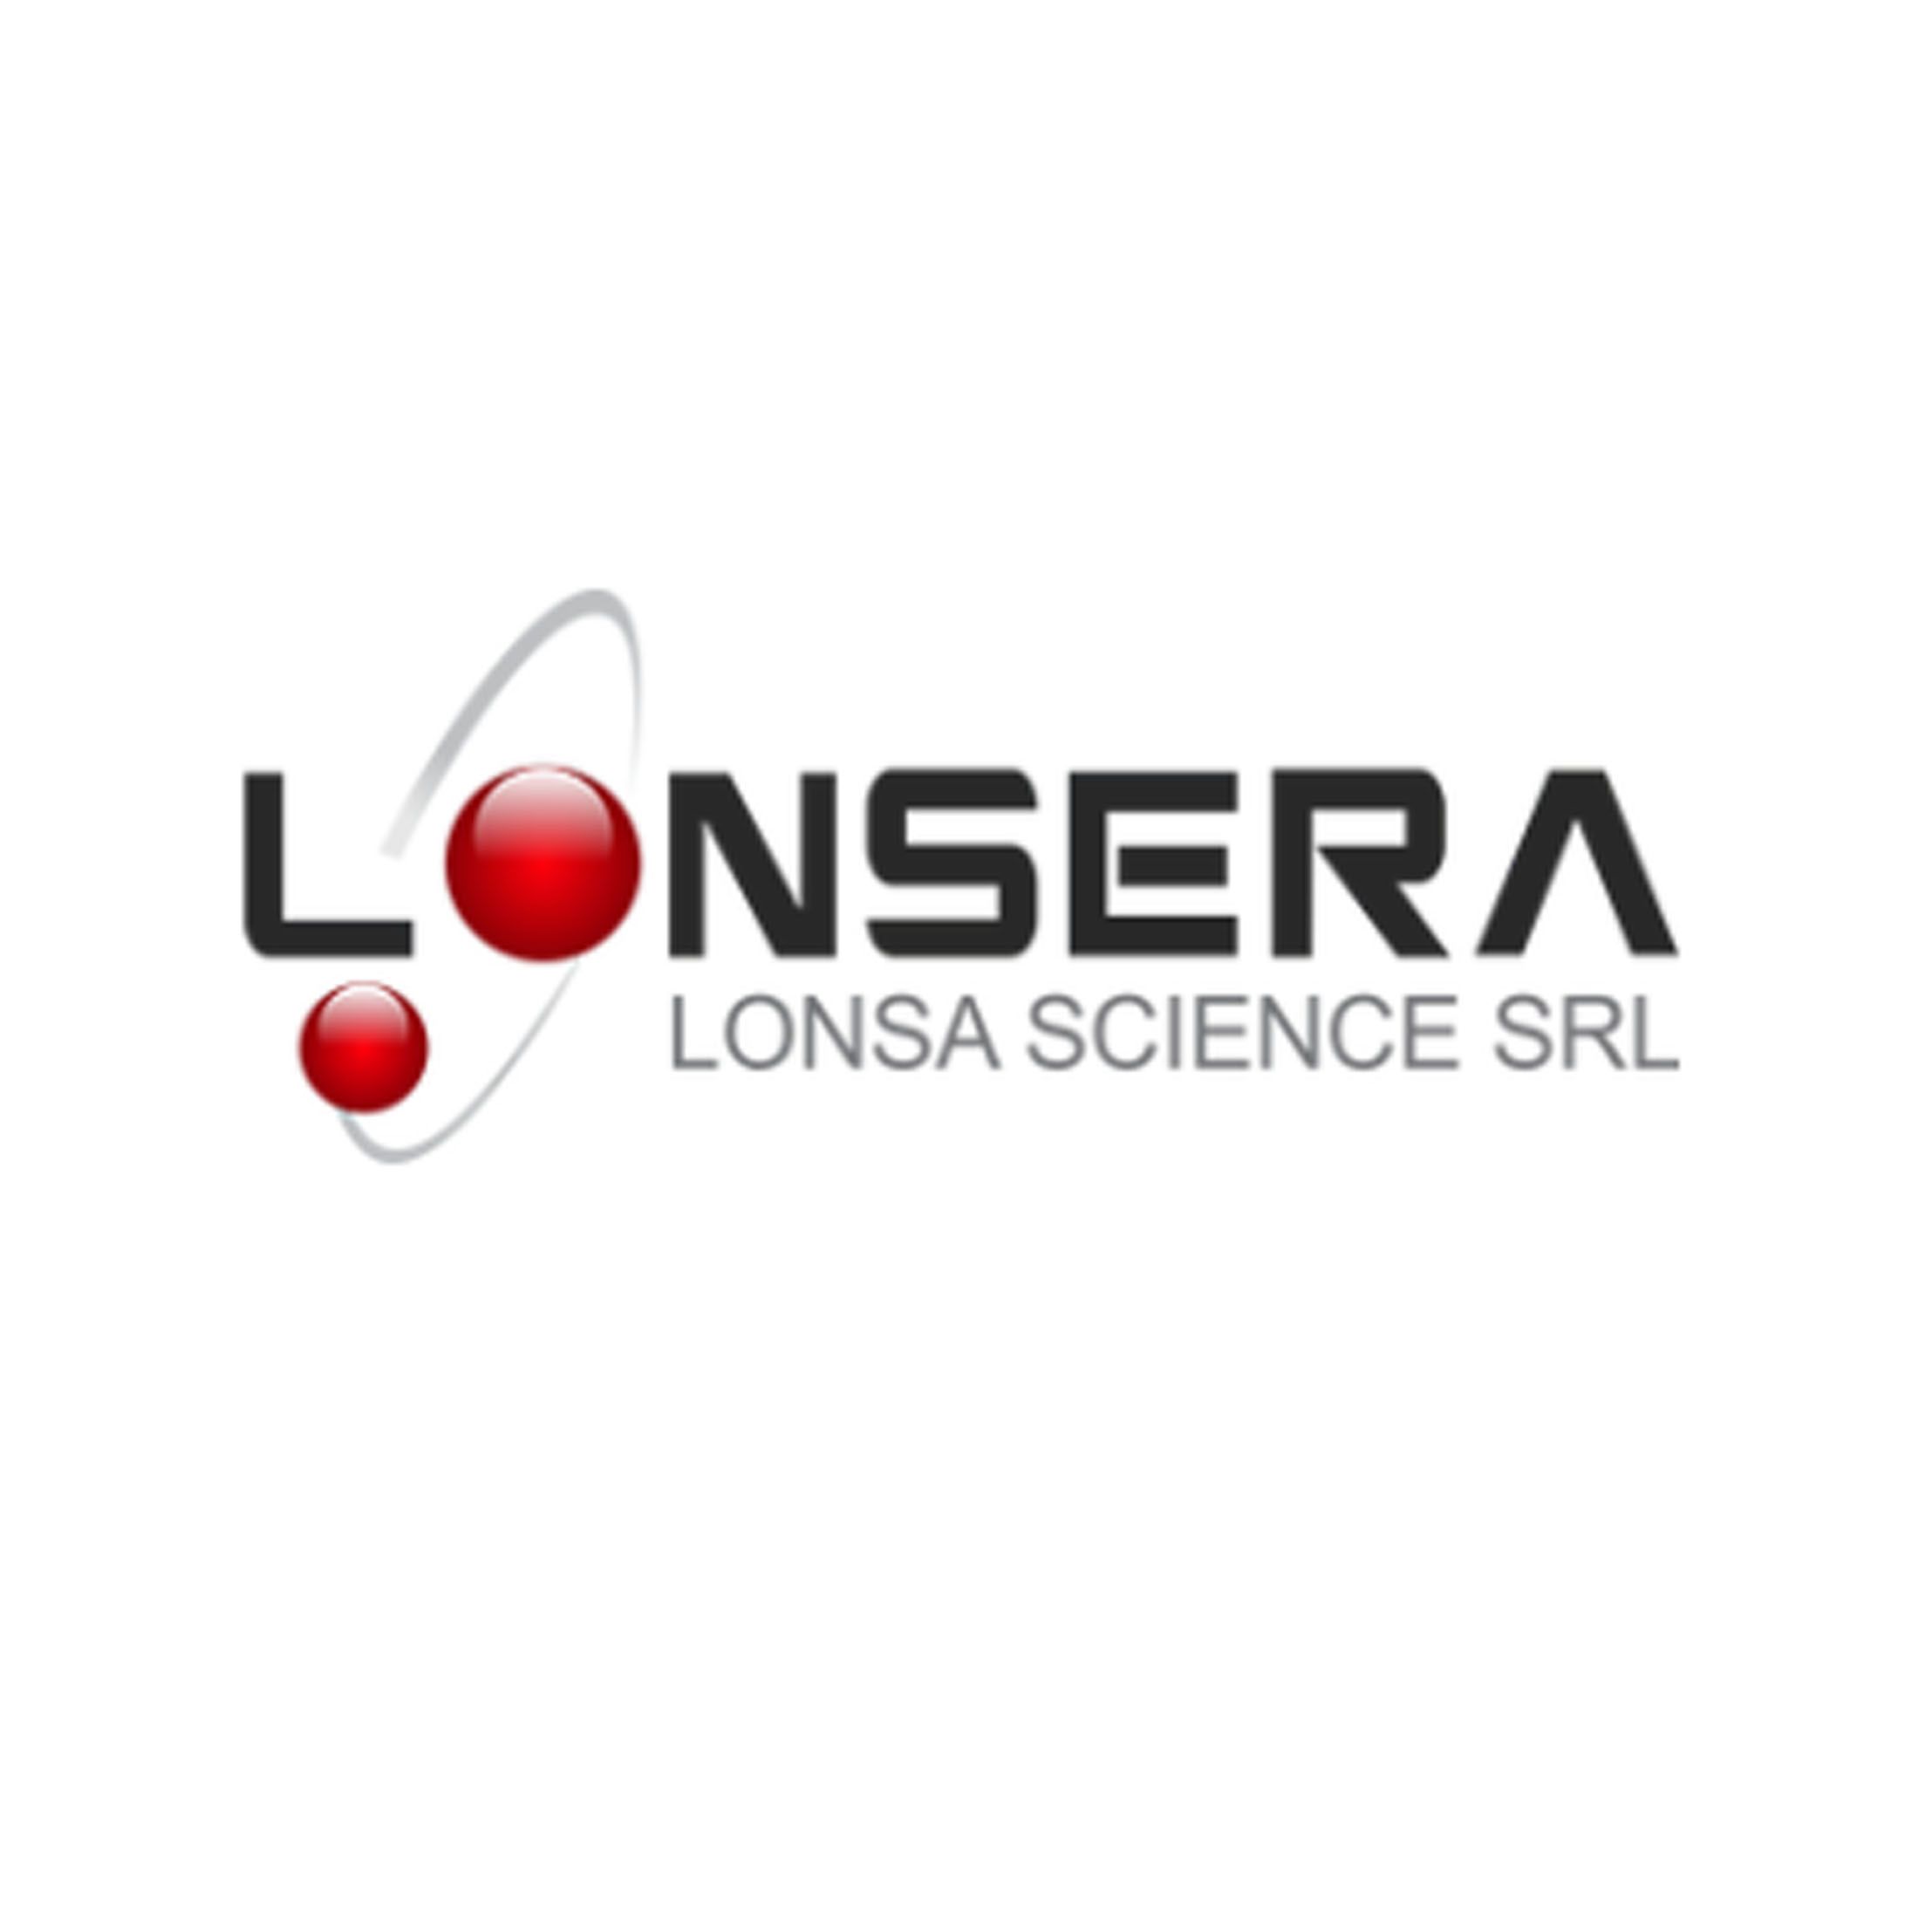 Lonsera无蛋白酶、特殊胎牛血清、其它动物血清、支原体清除剂、人血清封闭液